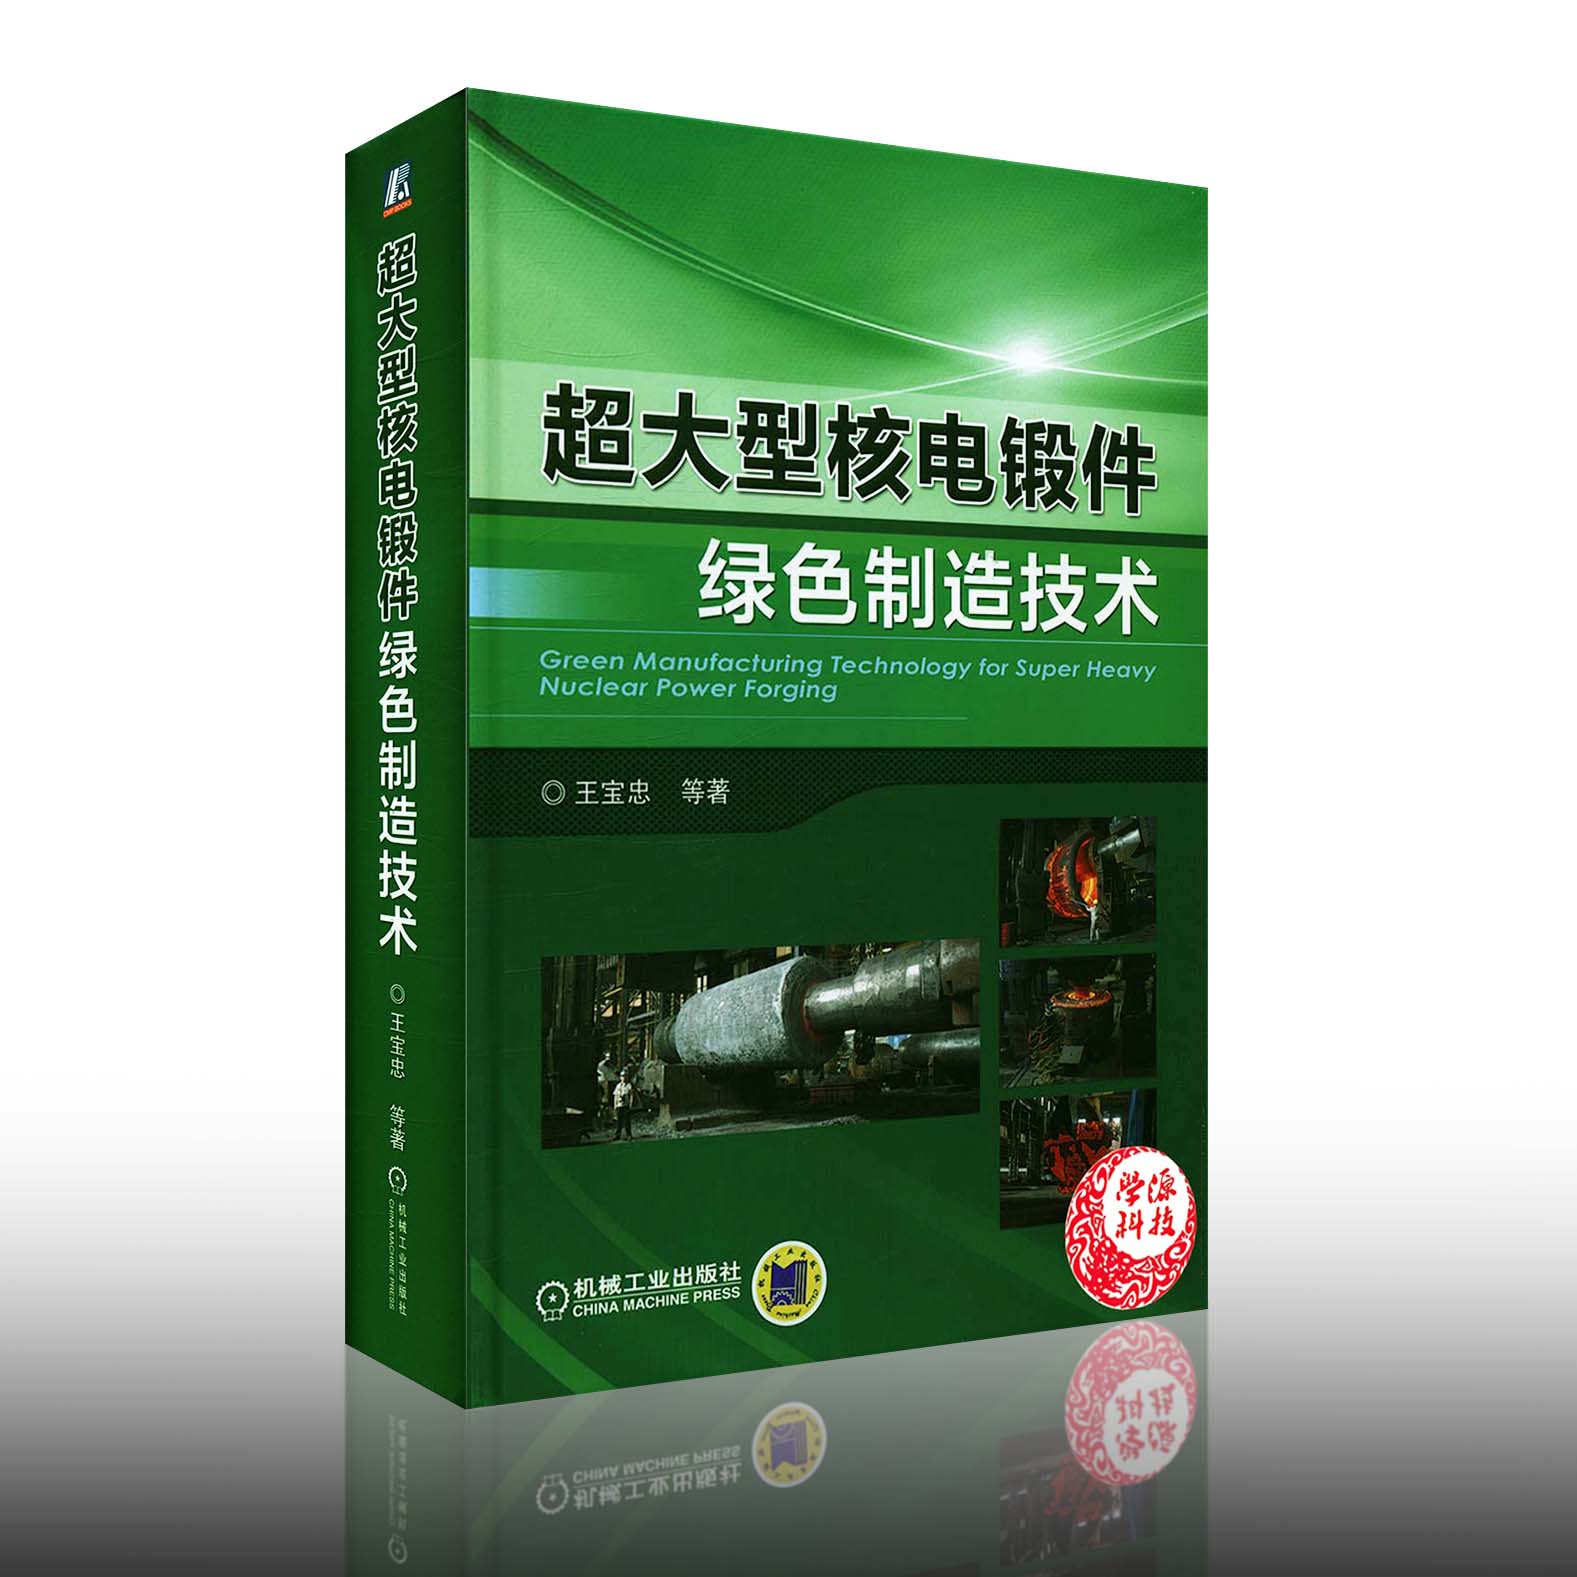 超大型核电锻件绿色制造技术 王宝忠 9787111556190 机械工业出版社 工业技术 原子能技术 技术与研发人员使用 研究生教材书